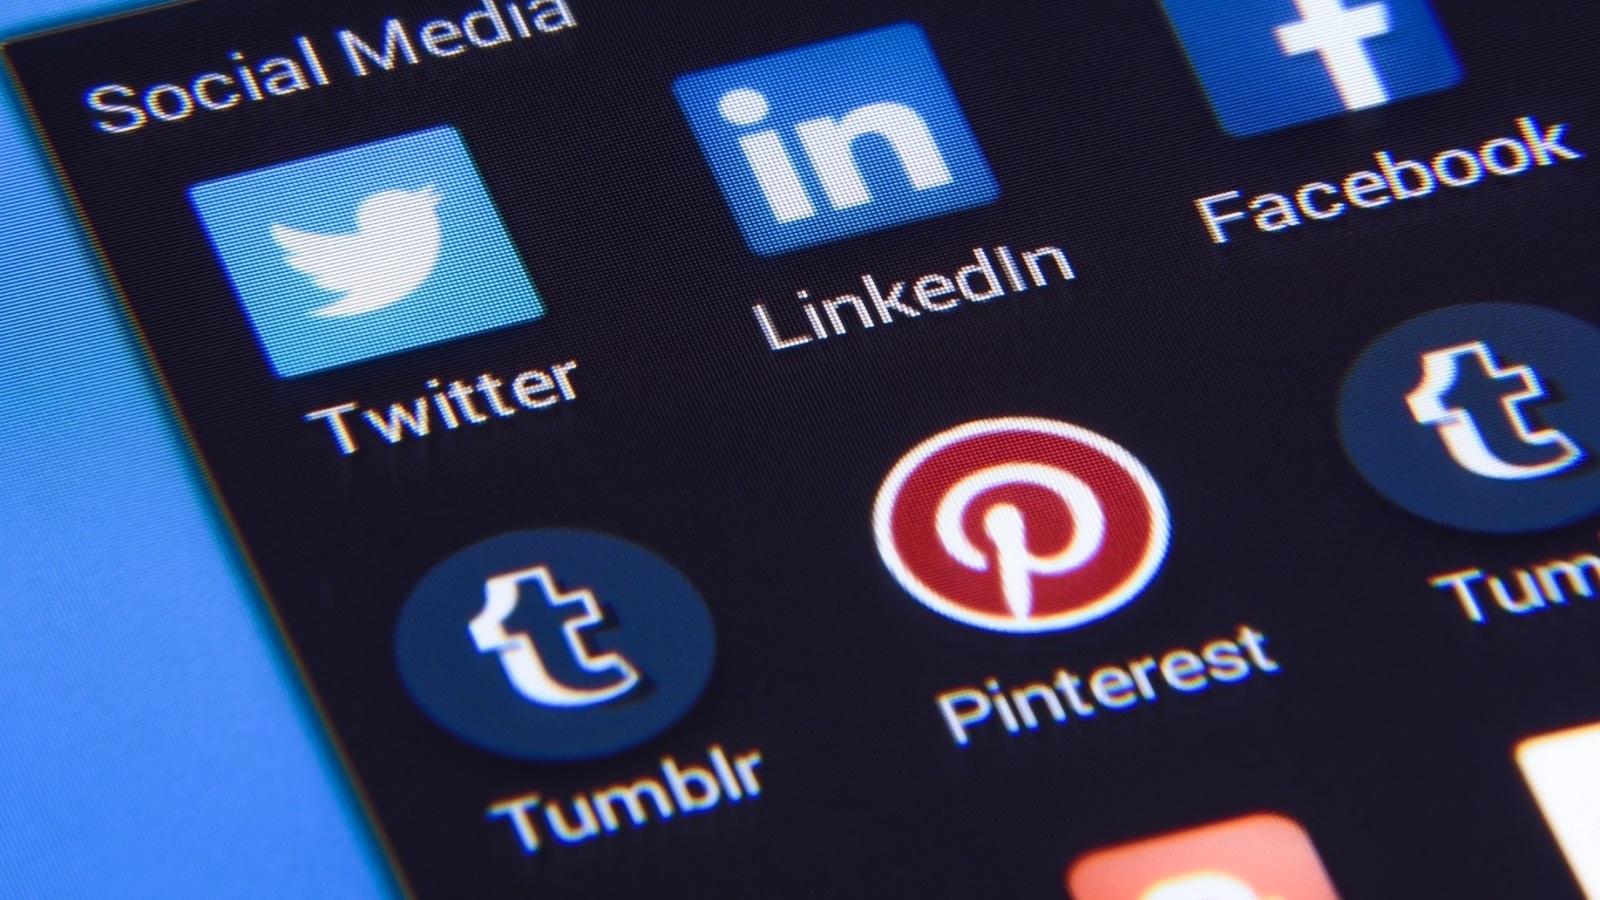 يُفضل بعض المدونين المهتمين بشبكات التواصل الاجتماعي استخدام منصة تمبلر(Tumblr)التي تتميز بكونها منصة مخصصة للتدوين المُصغر مع كافة مكونات ومميزات الشبكات الاجتماعية المتكاملة